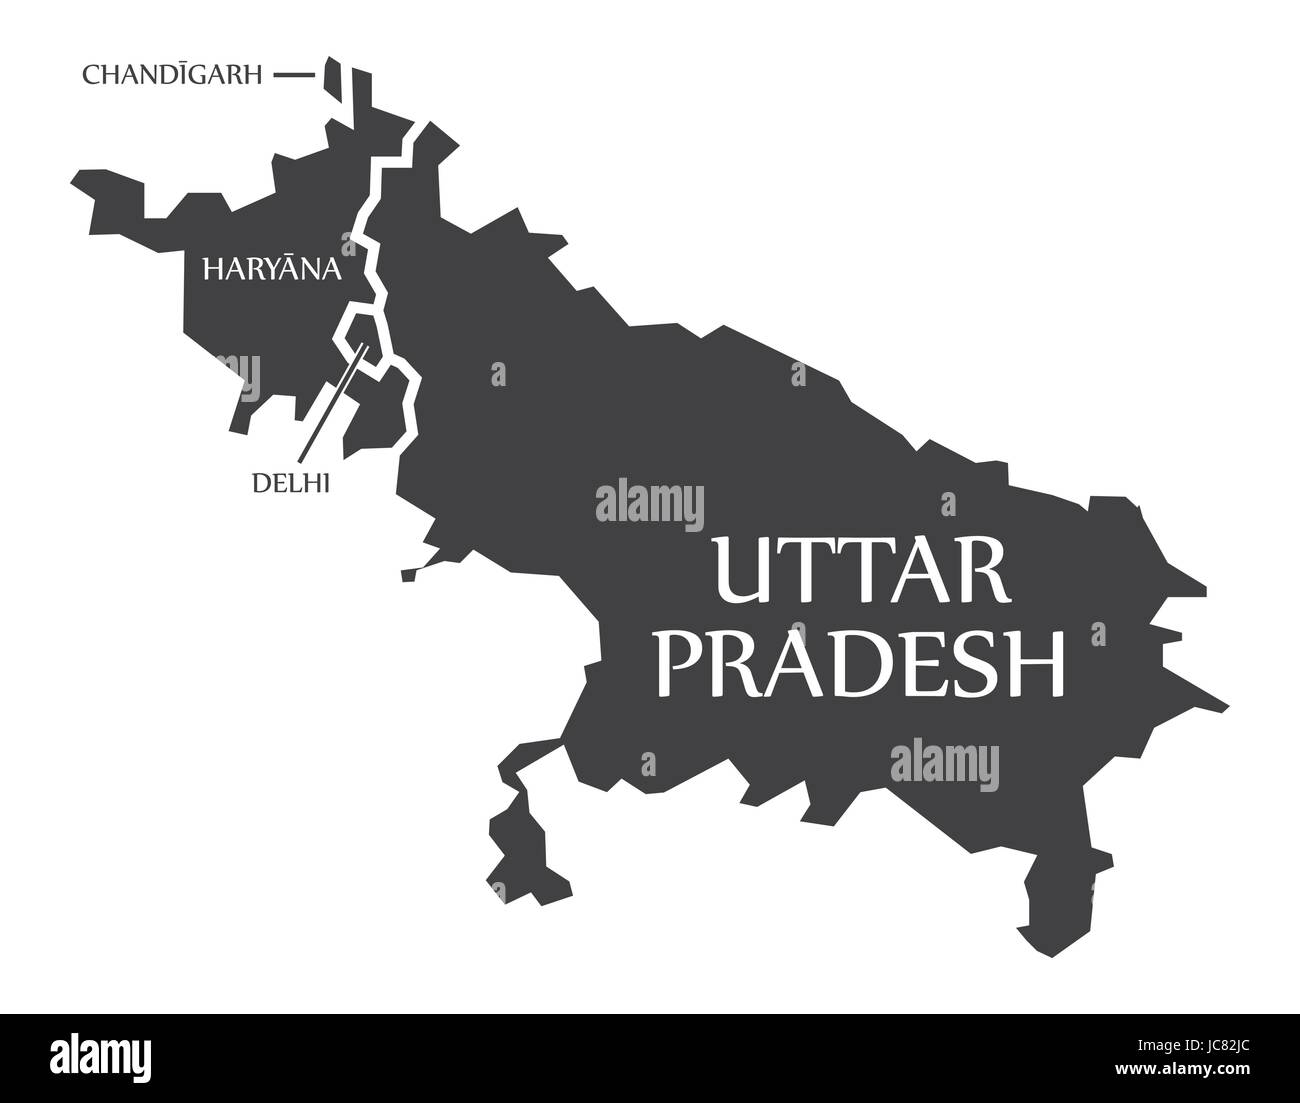 Chandigarh - Delhi - Delhi - Uttar Pradesh Map Illustration d'états indiens Illustration de Vecteur